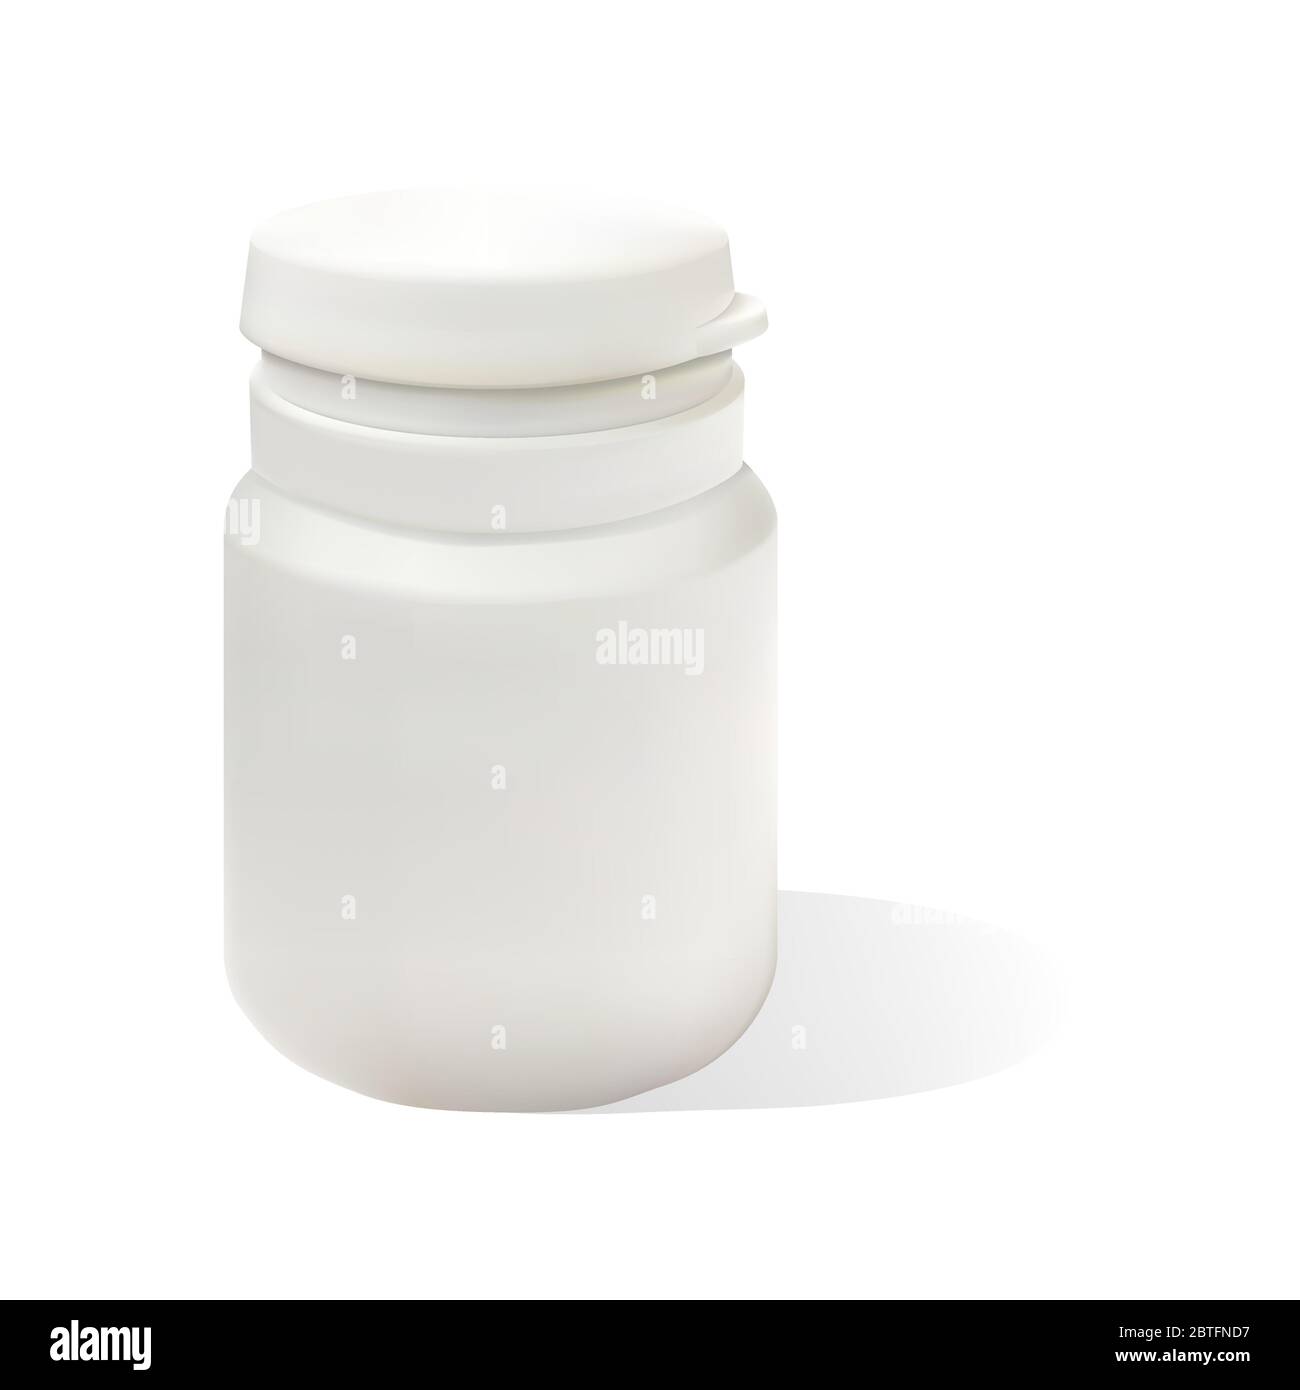 Flacone di plastica bianco realistico per pillole. Modello di simulazione. Illustrazione vettoriale di un piccolo vaso isolato su sfondo bianco. Illustrazione Vettoriale